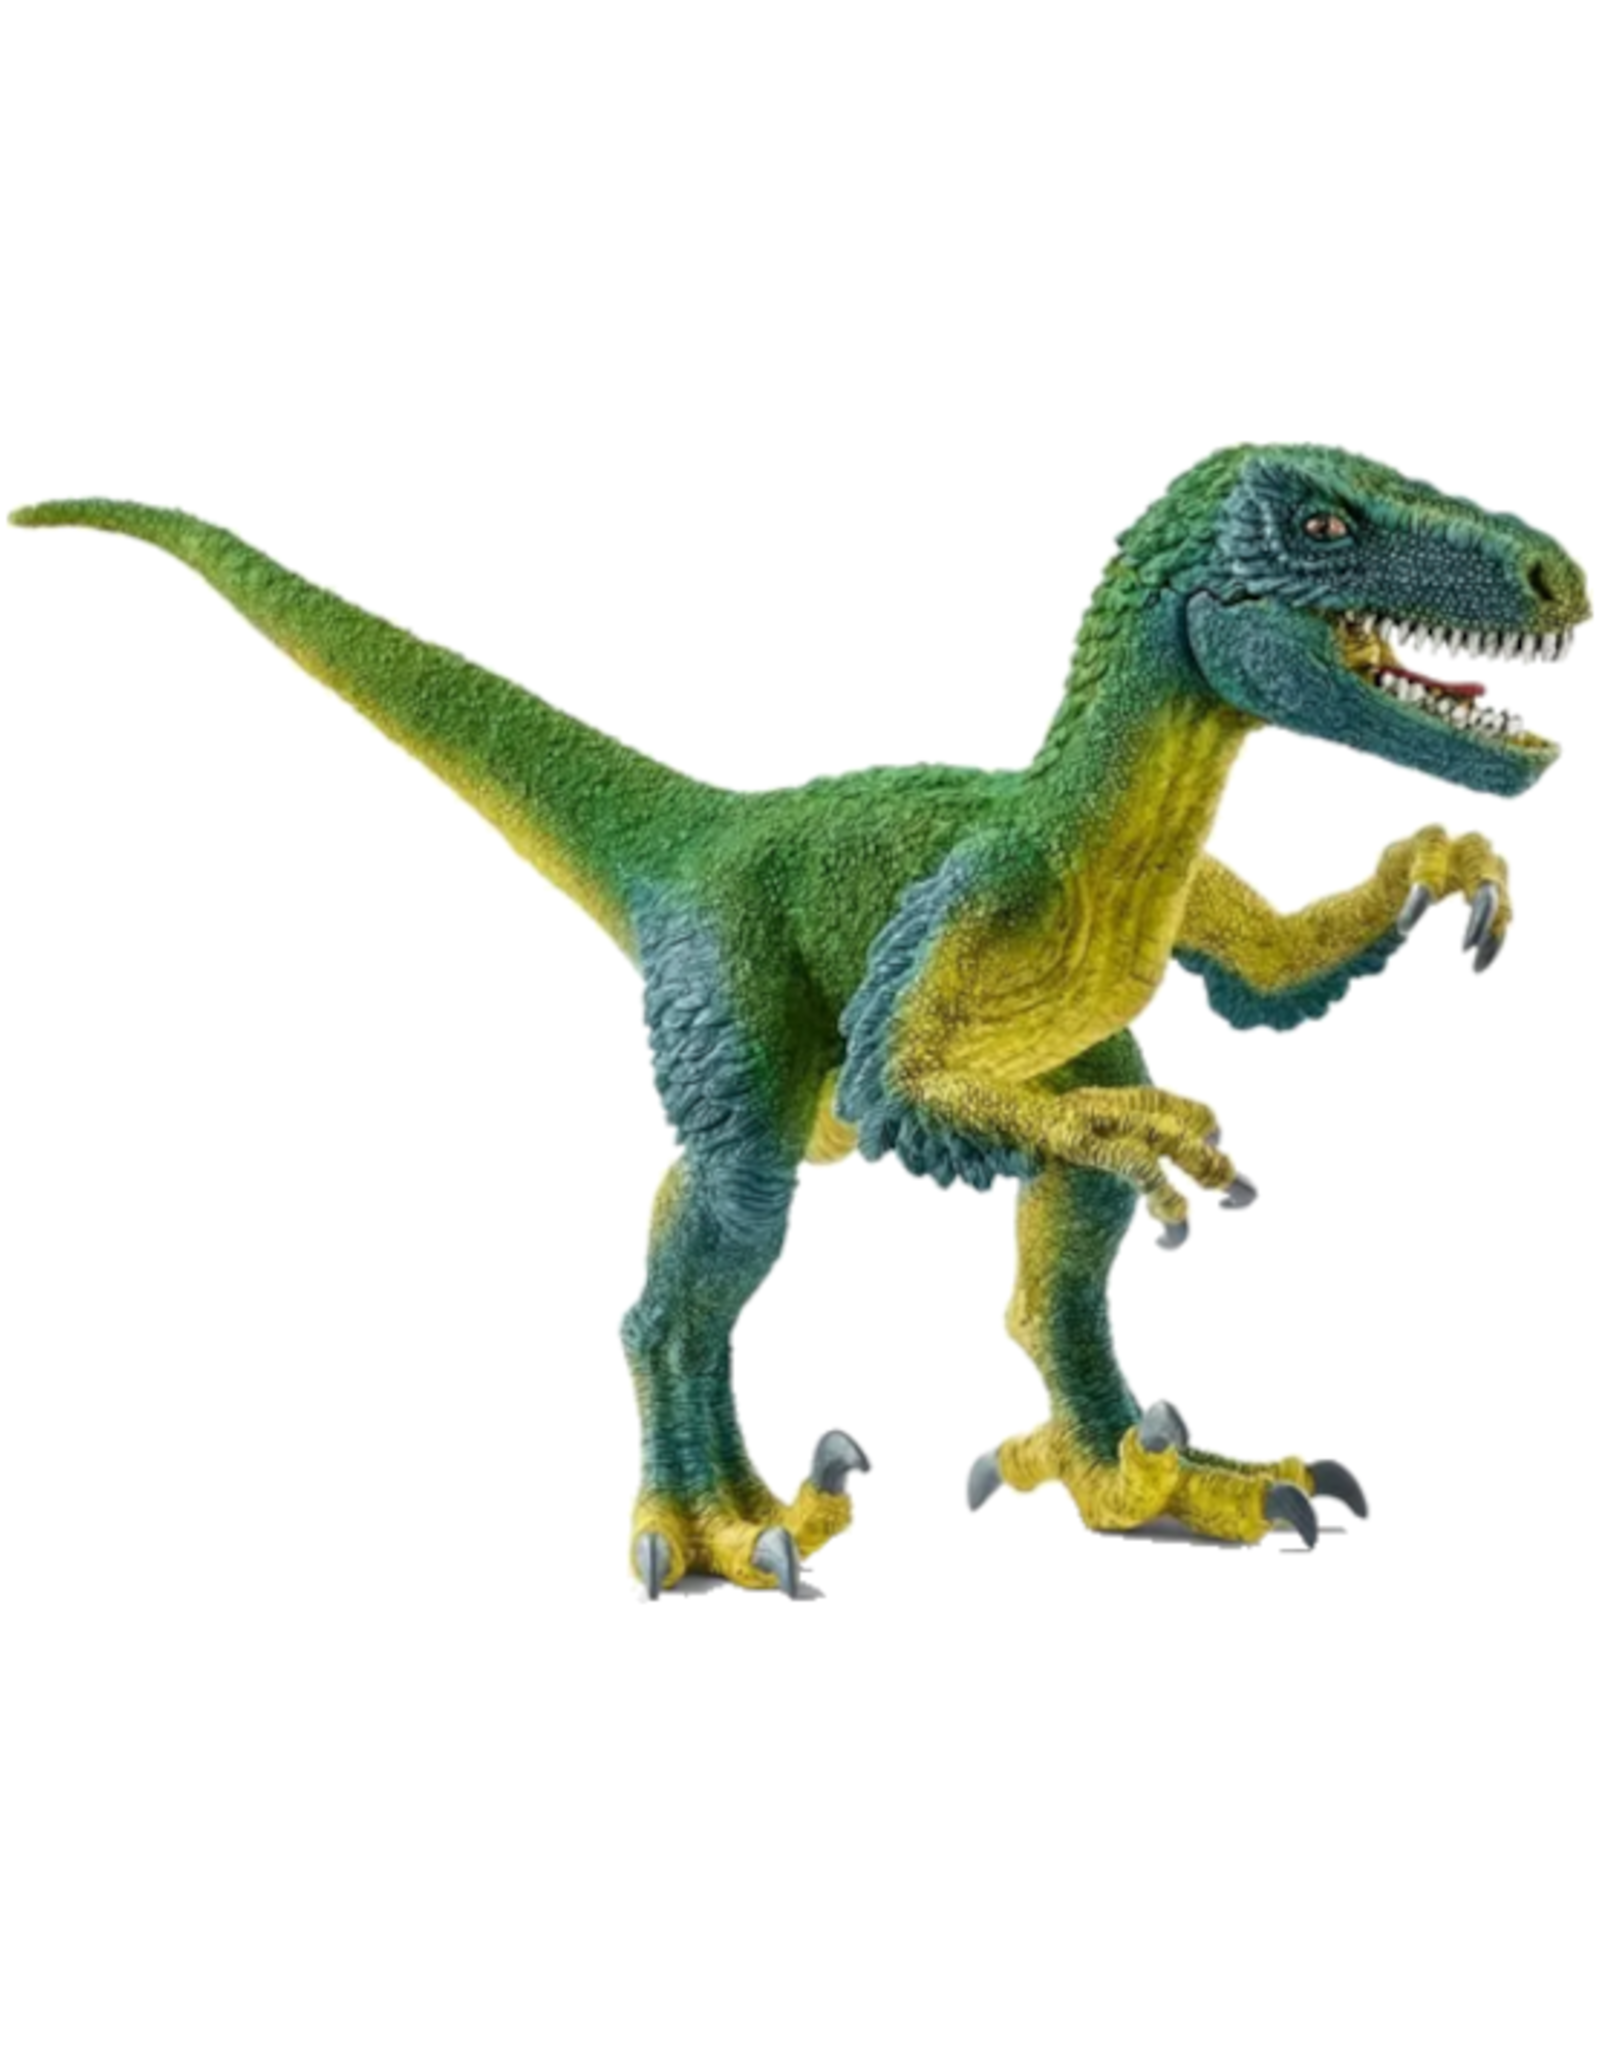 Schleich Schleich - Dinosaur - 14585 - Velociraptor